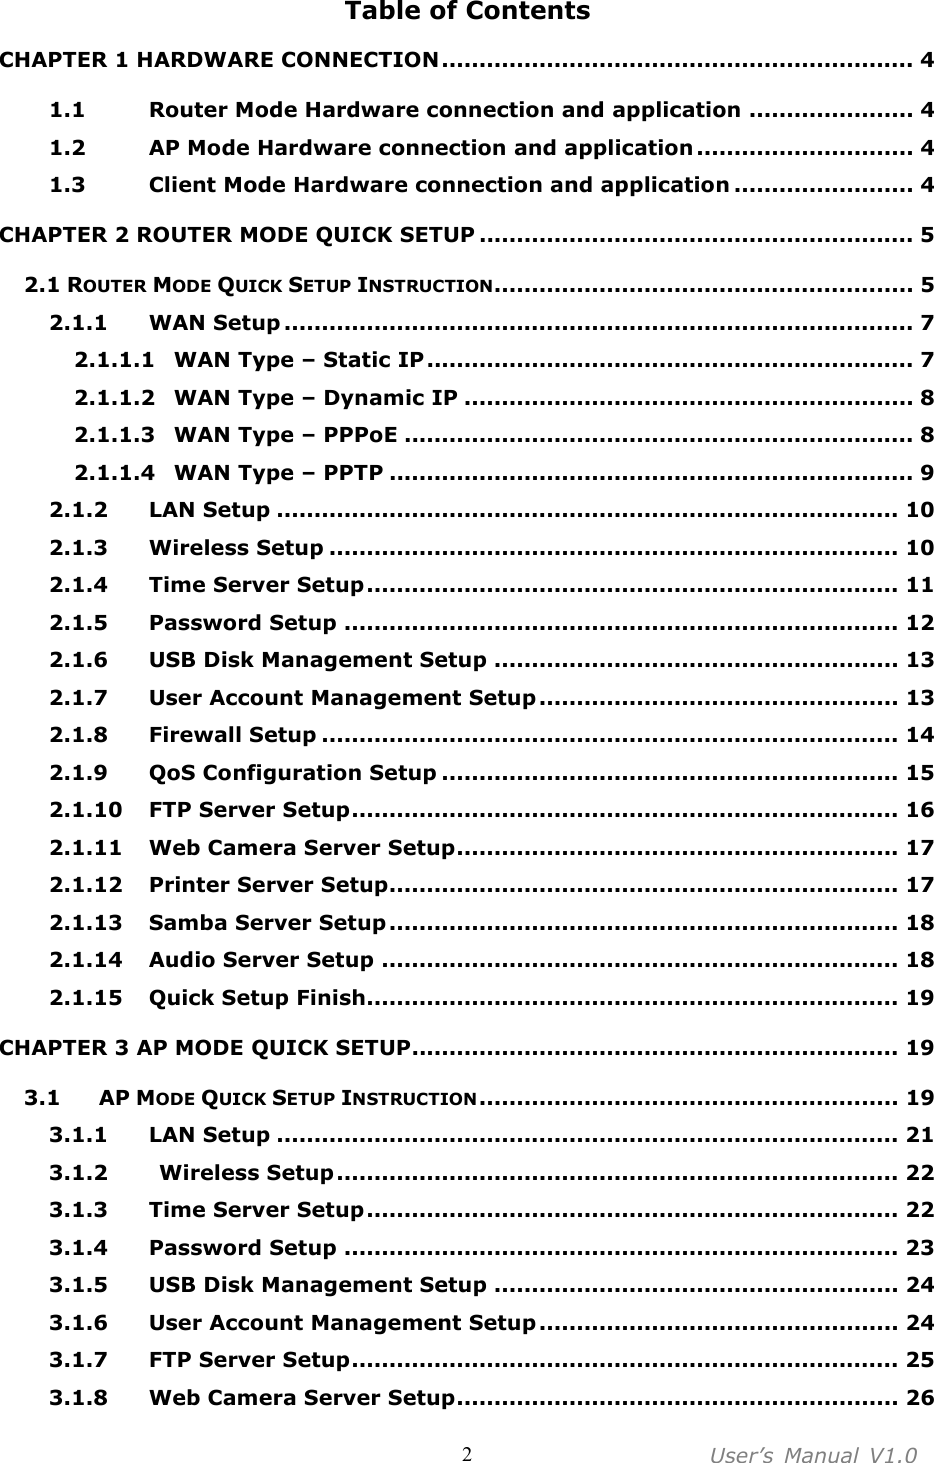 User’s  Manual  V1.0  2 Table of Contents CHAPTER 1 HARDWARE CONNECTION............................................................... 4 1.1  Router Mode Hardware connection and application ...................... 4 1.2  AP Mode Hardware connection and application ............................. 4 1.3  Client Mode Hardware connection and application ........................ 4 CHAPTER 2 ROUTER MODE QUICK SETUP .......................................................... 5 2.1 ROUTER MODE QUICK SETUP INSTRUCTION........................................................ 5 2.1.1  WAN Setup .................................................................................... 7 2.1.1.1  WAN Type – Static IP................................................................. 7 2.1.1.2  WAN Type – Dynamic IP ............................................................ 8 2.1.1.3  WAN Type – PPPoE .................................................................... 8 2.1.1.4  WAN Type – PPTP ...................................................................... 9 2.1.2  LAN Setup ................................................................................... 10 2.1.3  Wireless Setup ............................................................................ 10 2.1.4  Time Server Setup....................................................................... 11 2.1.5  Password Setup .......................................................................... 12 2.1.6  USB Disk Management Setup ...................................................... 13 2.1.7  User Account Management Setup ................................................ 13 2.1.8  Firewall Setup ............................................................................. 14 2.1.9  QoS Configuration Setup ............................................................. 15 2.1.10  FTP Server Setup......................................................................... 16 2.1.11  Web Camera Server Setup........................................................... 17 2.1.12  Printer Server Setup.................................................................... 17 2.1.13  Samba Server Setup .................................................................... 18 2.1.14  Audio Server Setup ..................................................................... 18 2.1.15  Quick Setup Finish....................................................................... 19 CHAPTER 3 AP MODE QUICK SETUP................................................................. 19 3.1  AP MODE QUICK SETUP INSTRUCTION........................................................ 19 3.1.1  LAN Setup ................................................................................... 21 3.1.2    Wireless Setup........................................................................... 22 3.1.3  Time Server Setup....................................................................... 22 3.1.4  Password Setup .......................................................................... 23 3.1.5  USB Disk Management Setup ...................................................... 24 3.1.6  User Account Management Setup ................................................ 24 3.1.7  FTP Server Setup......................................................................... 25 3.1.8  Web Camera Server Setup........................................................... 26 